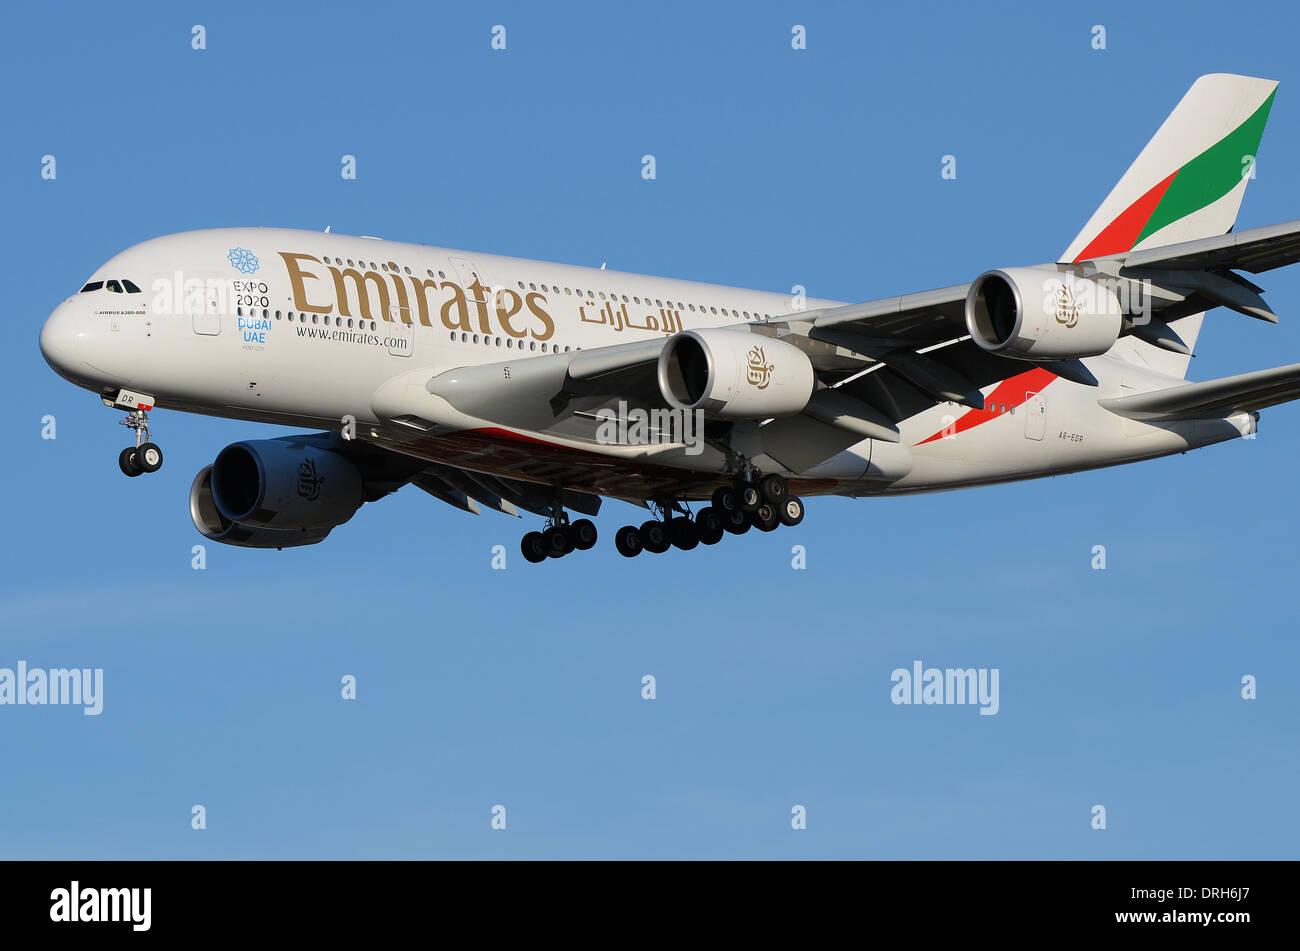 Emirates Airline Airbus A380 con marcature speciali che pubblicizzano Expo 2020 Dubai UAE come città ospitante. Seriale A6-EDR. Atterraggio a Londra Heathrow Foto Stock